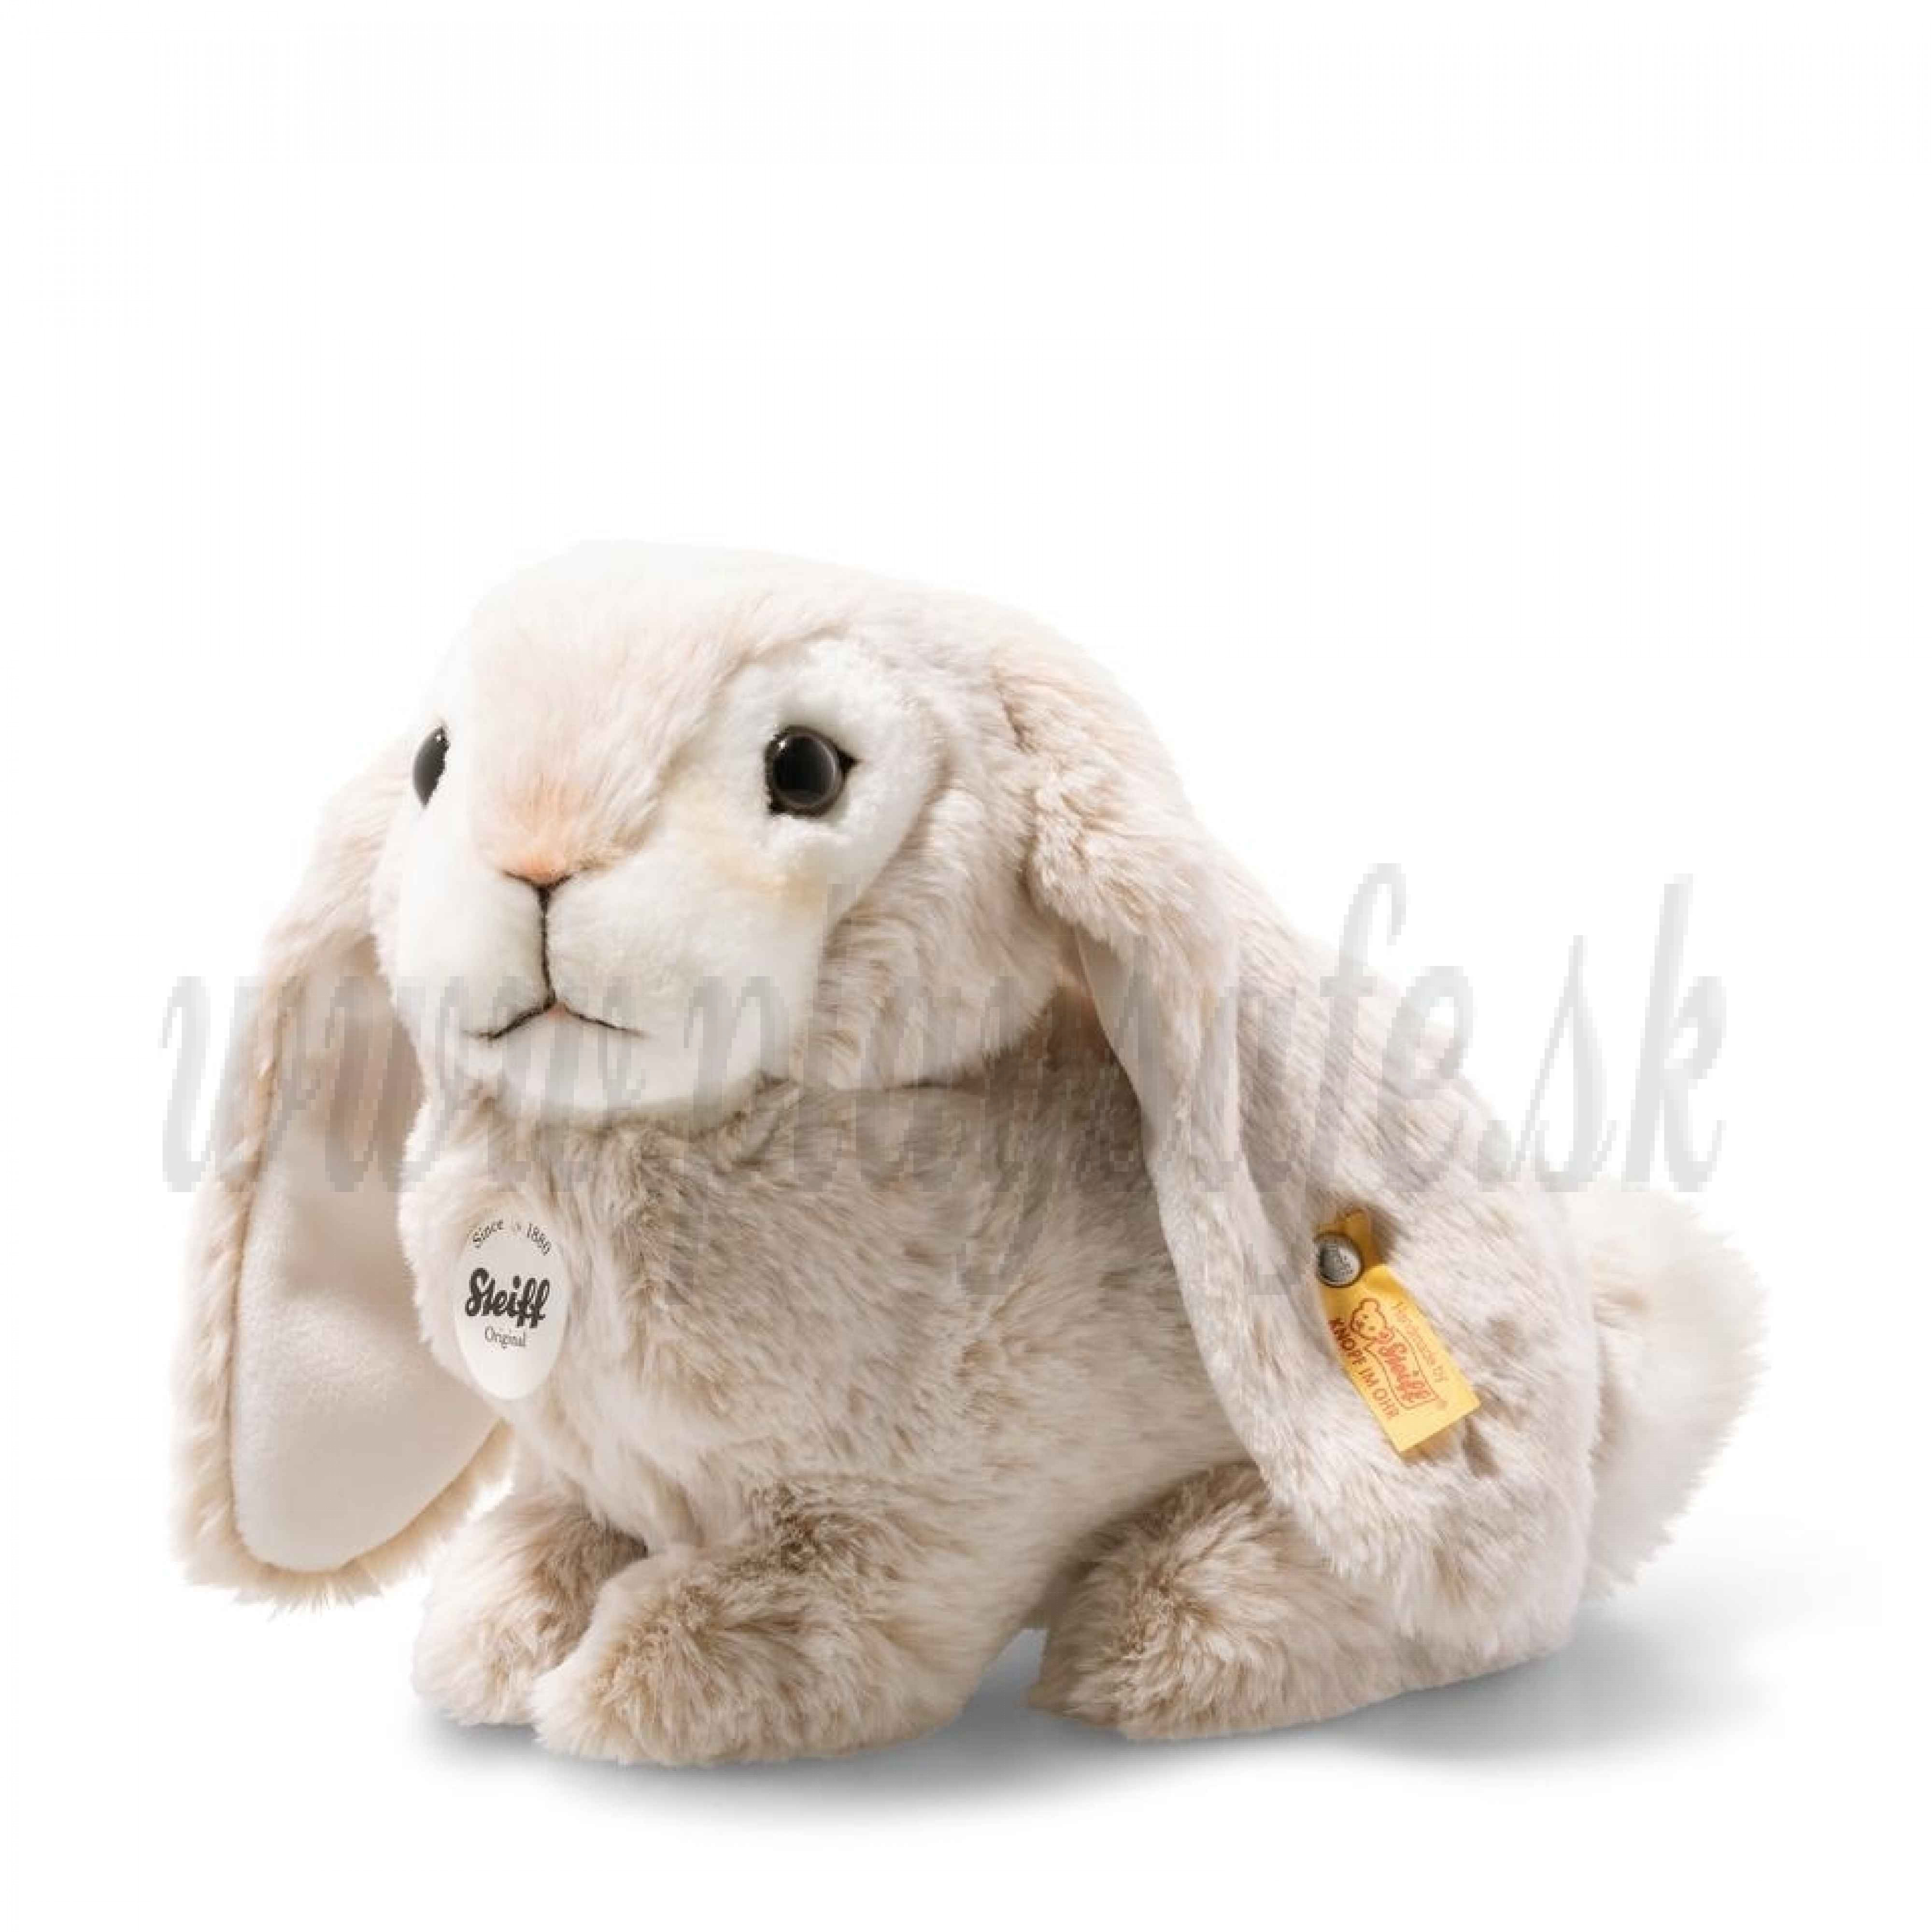 Steiff Lauscher rabbit soft toy, 24cm